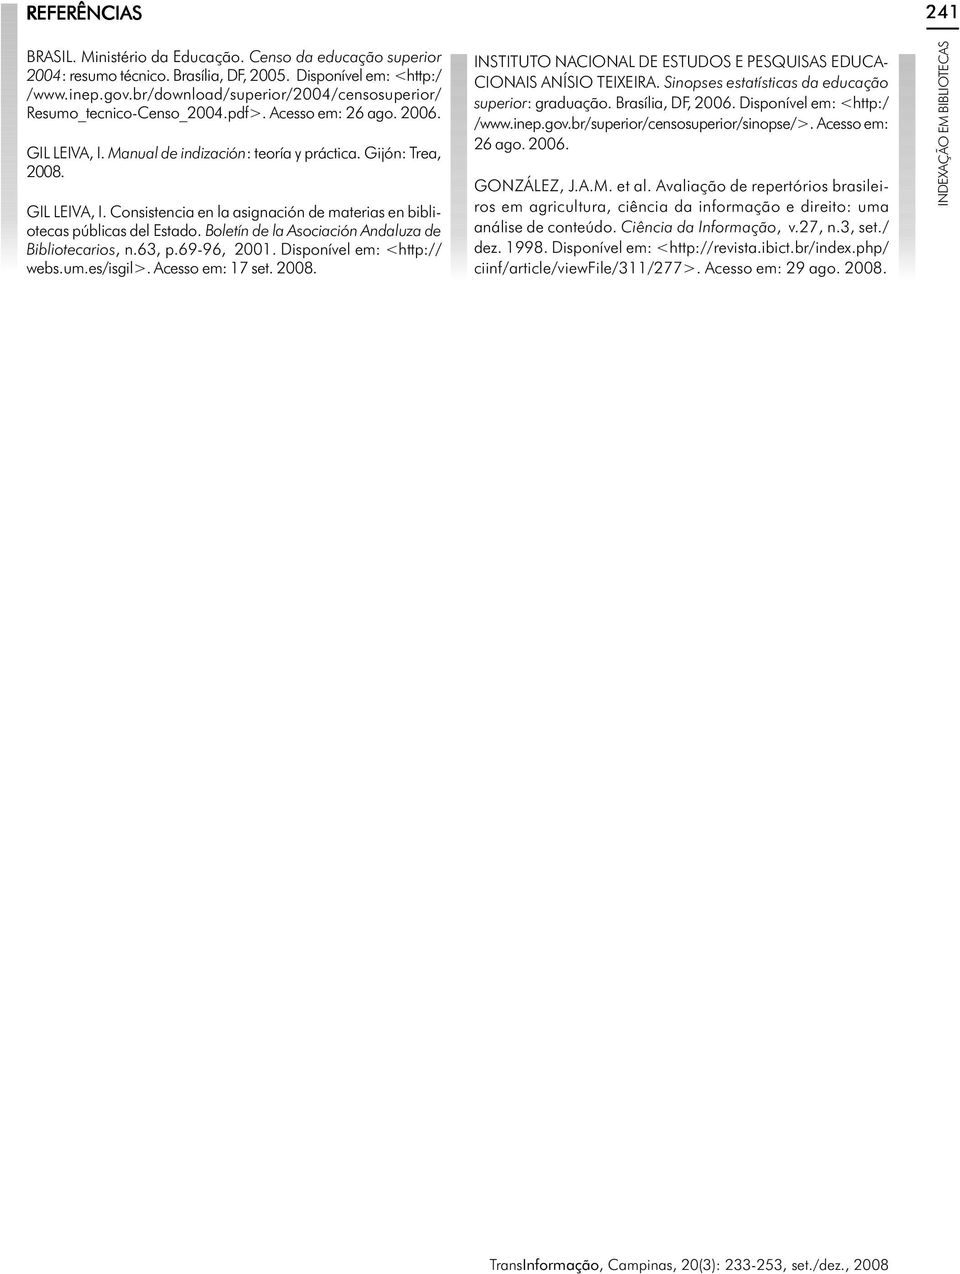 Boletín de la Asociación Andaluza de Bibliotecarios, n.63, p.69-96, 21. Disponível em: <http:// webs.um.es/isgil>. Acesso em: 17 set. 28.